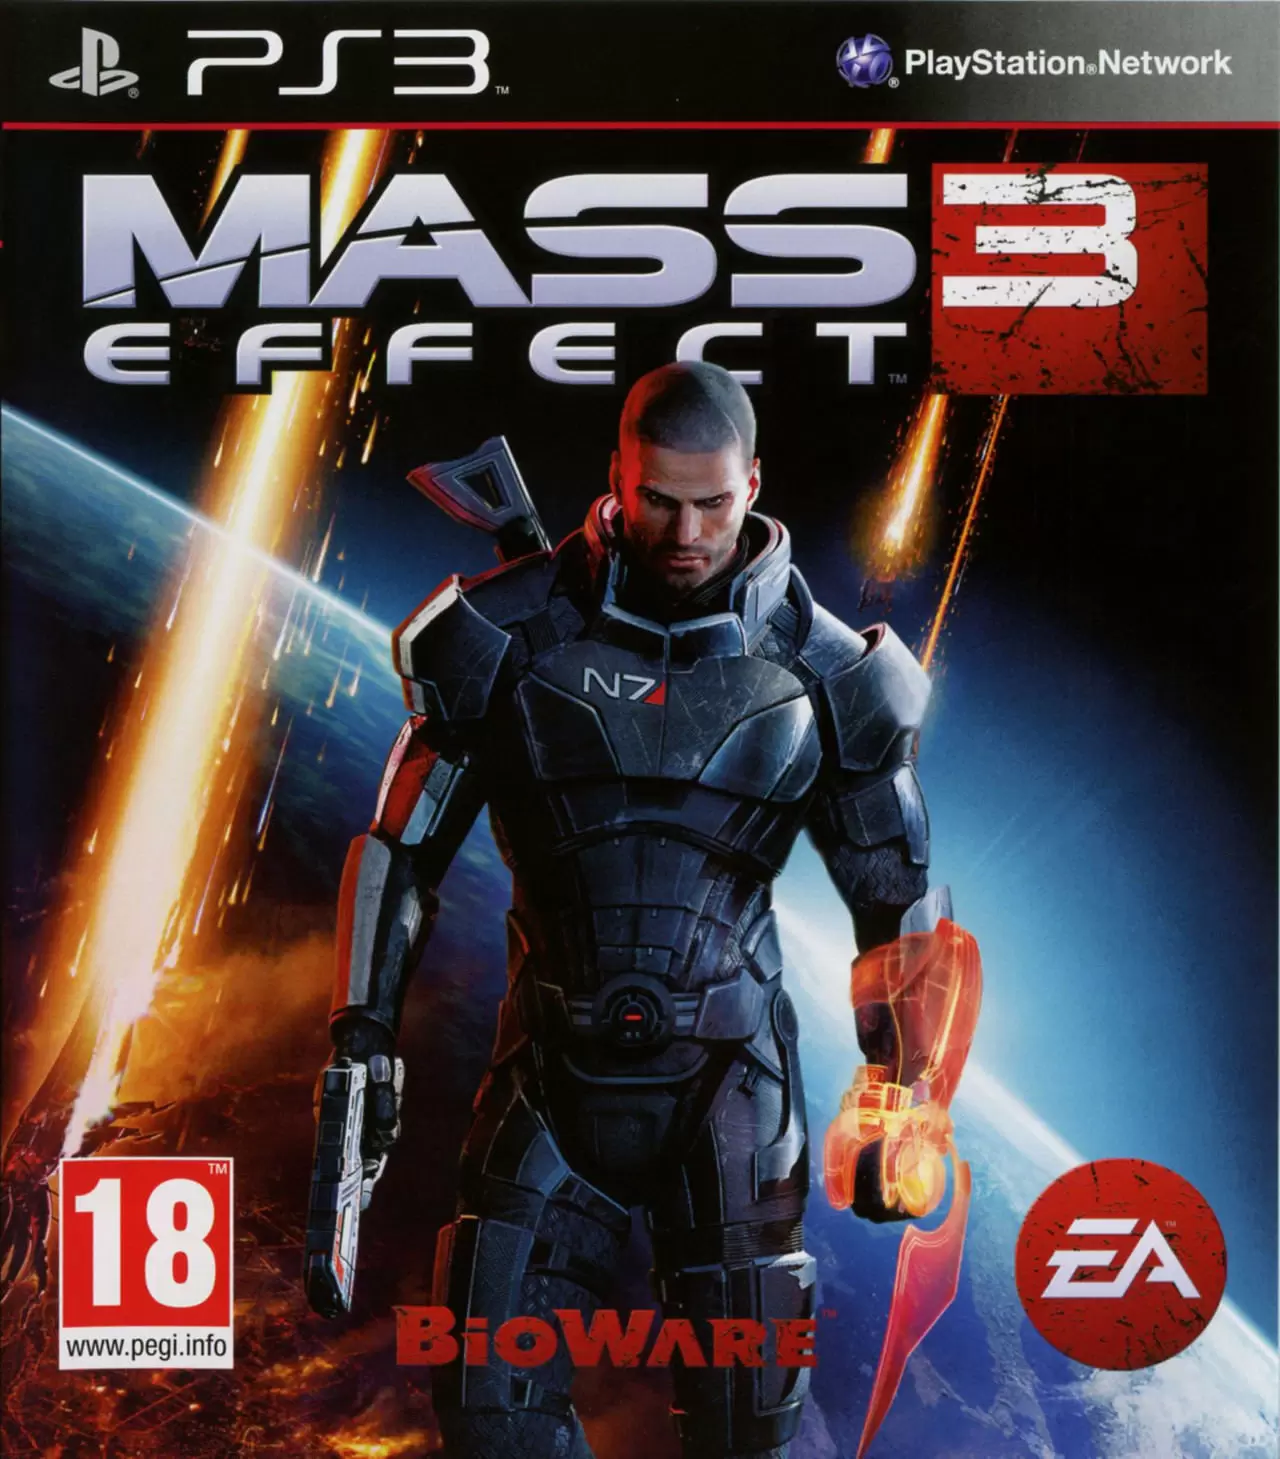 PS3 Games - Mass Effect 3